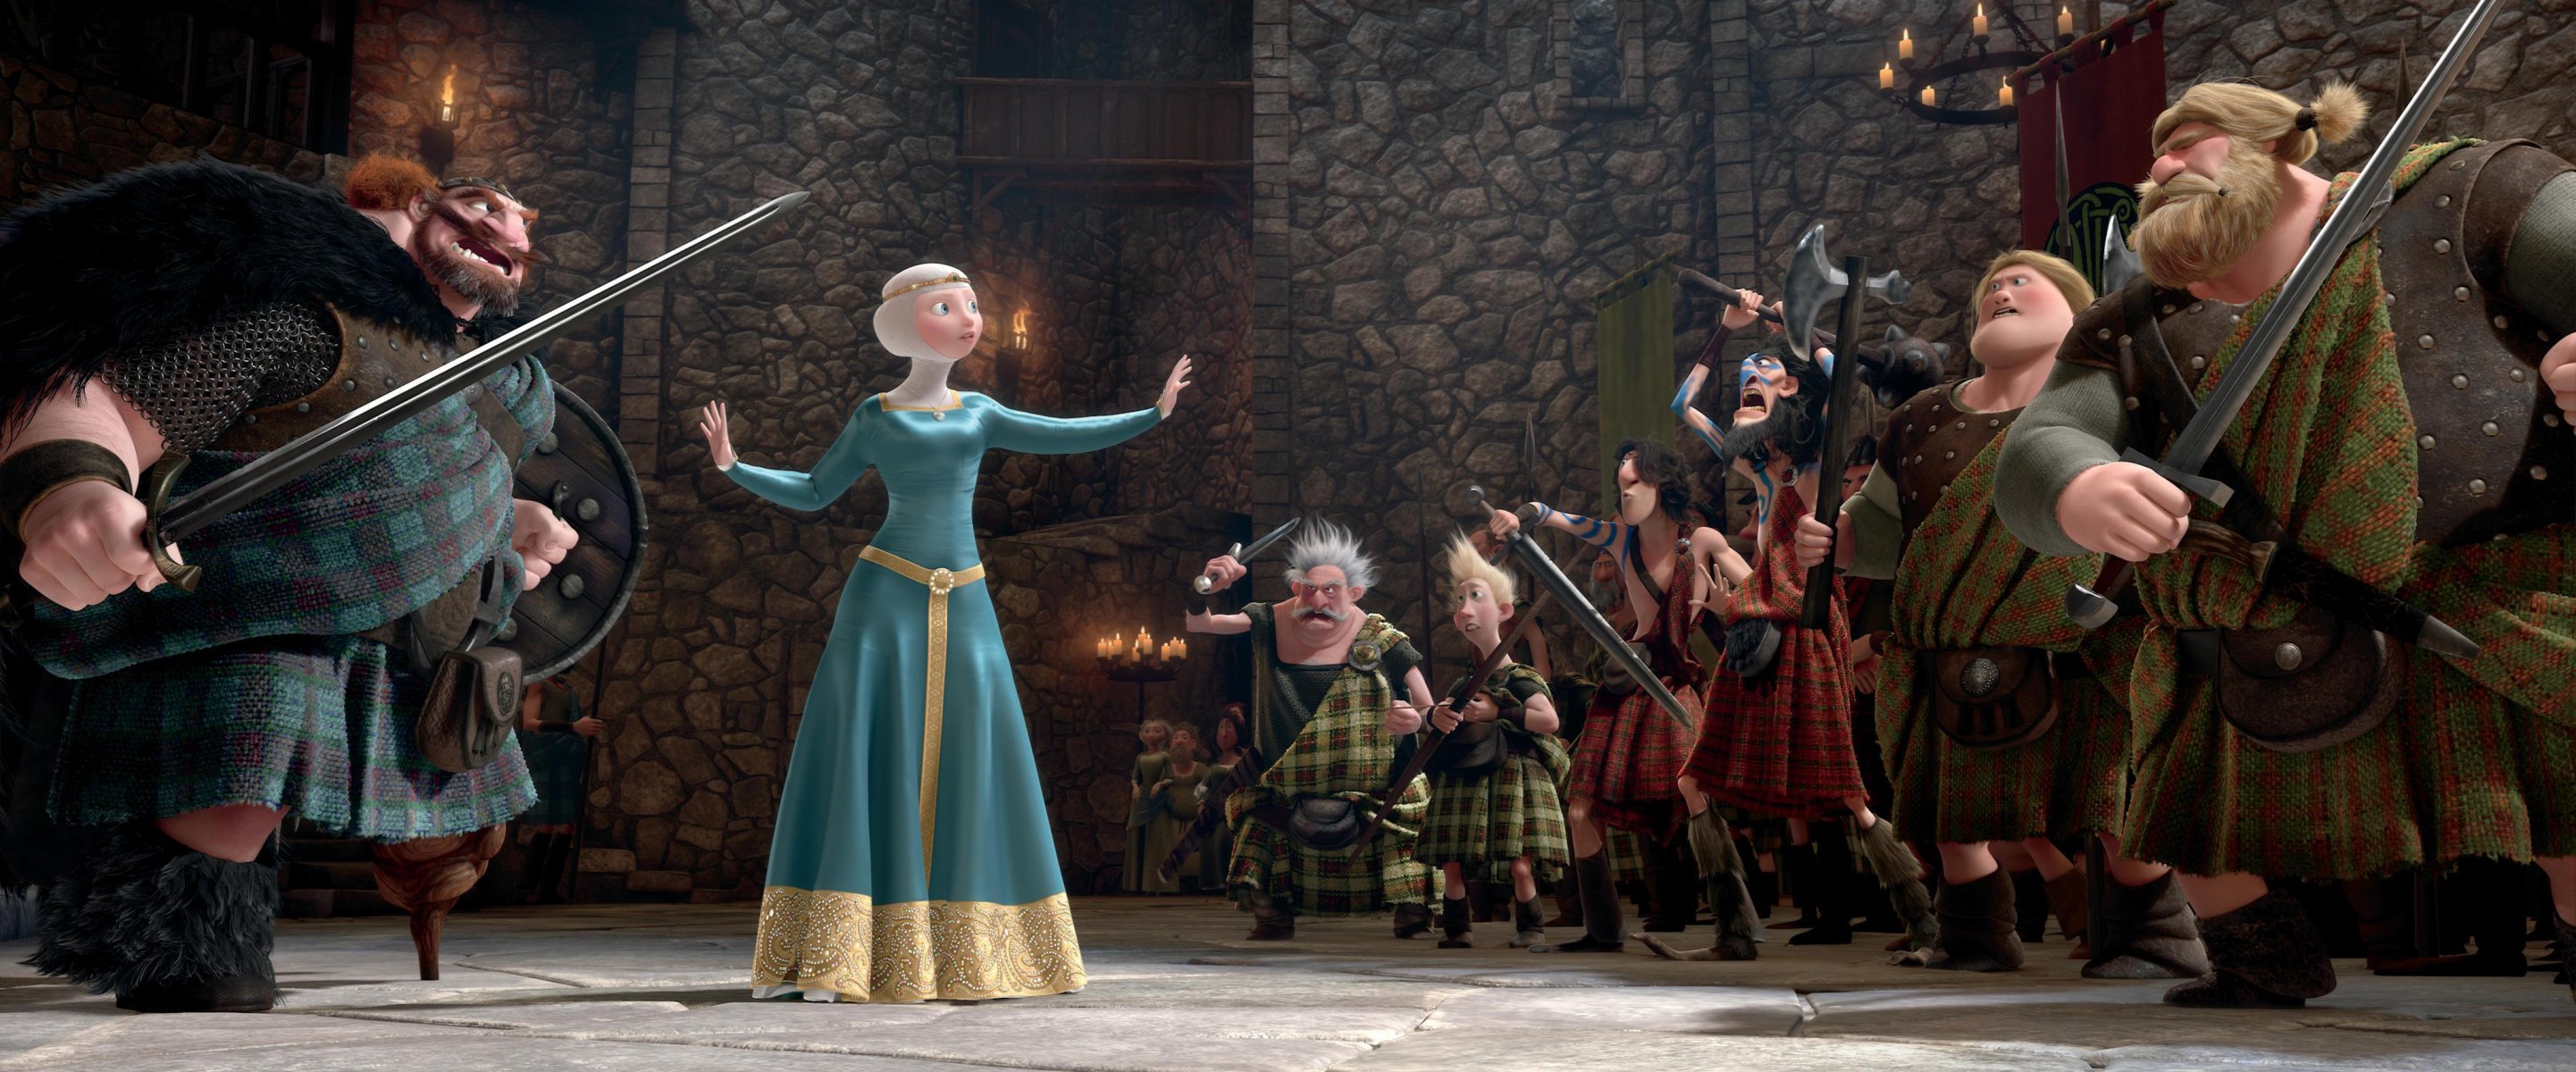 фильм дисней pixar шотландия король королева принцесса варвары мерида красные волосы храбрая сердцем мультфильм пиксар лучница воины шотландцы замок свечи собрание